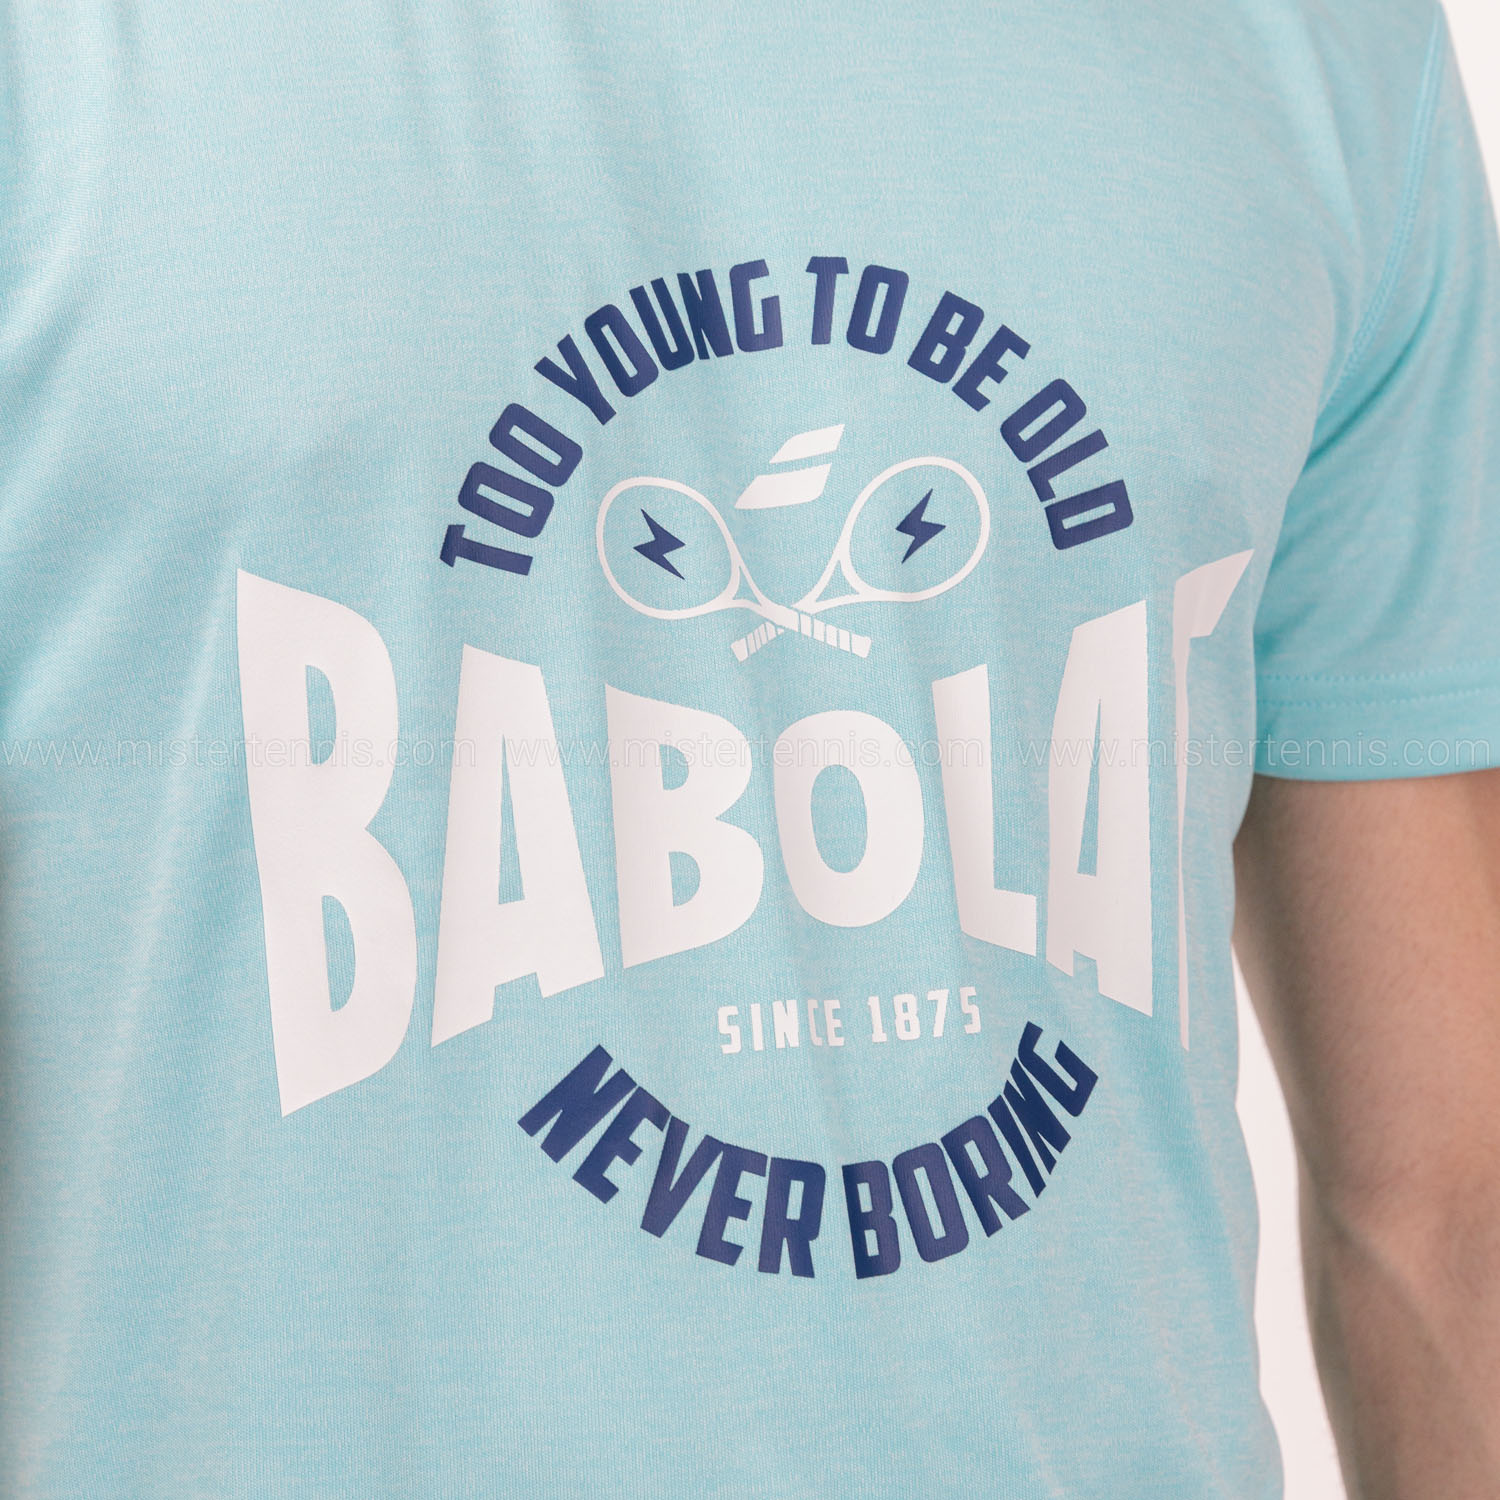 Babolat Exercise Graphic Camiseta - Angel Blue Heather